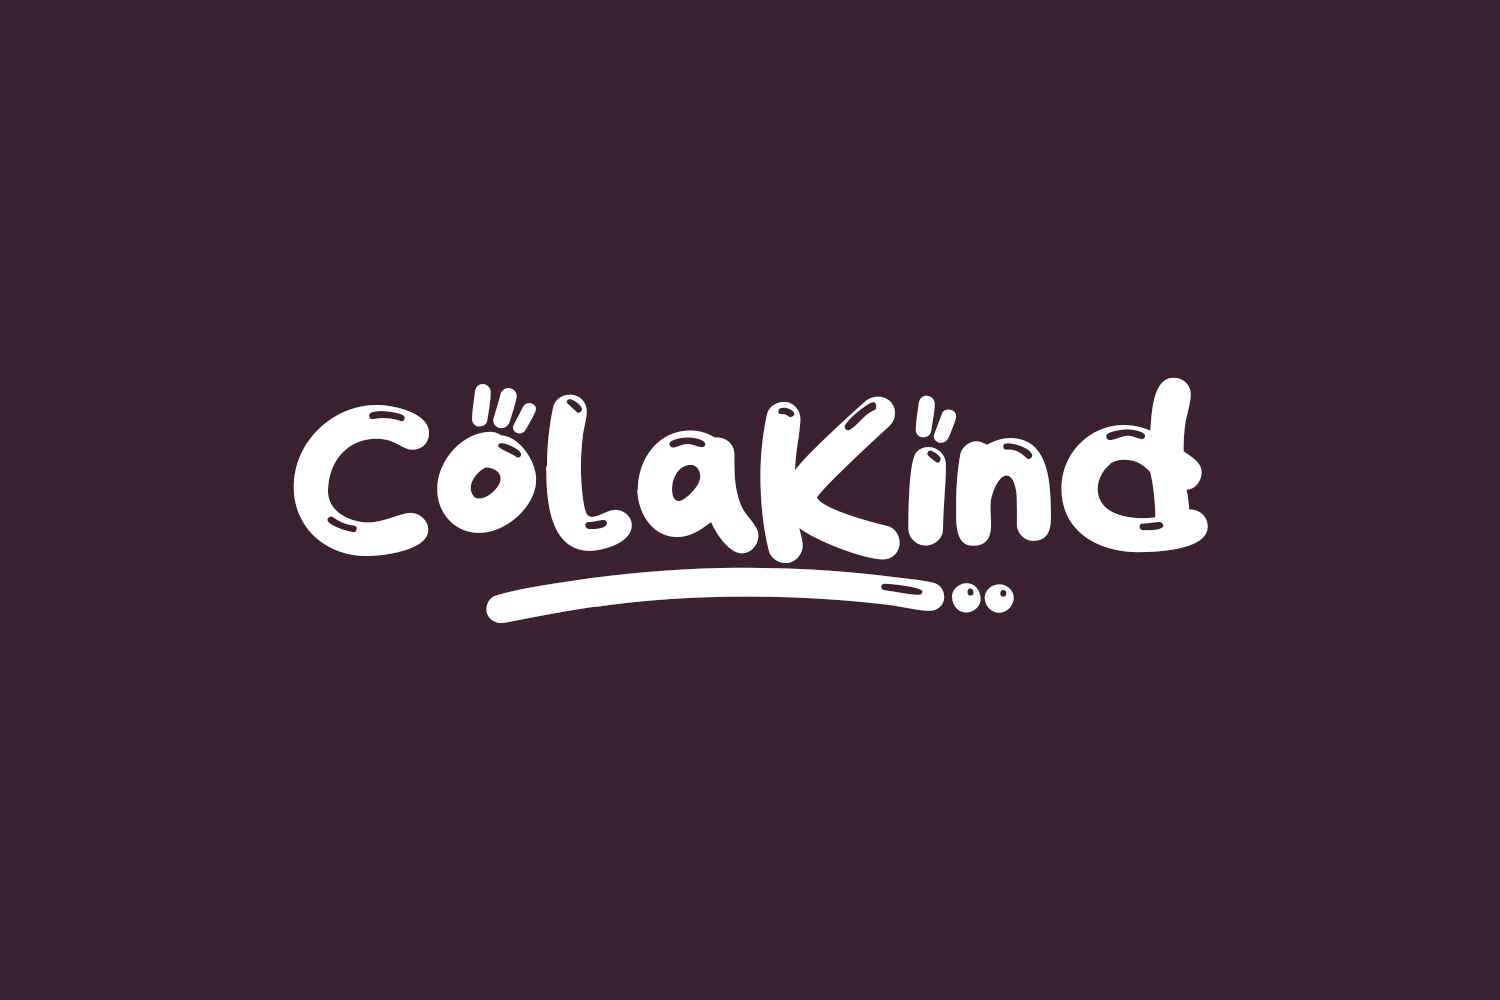 ColaKind Free Font